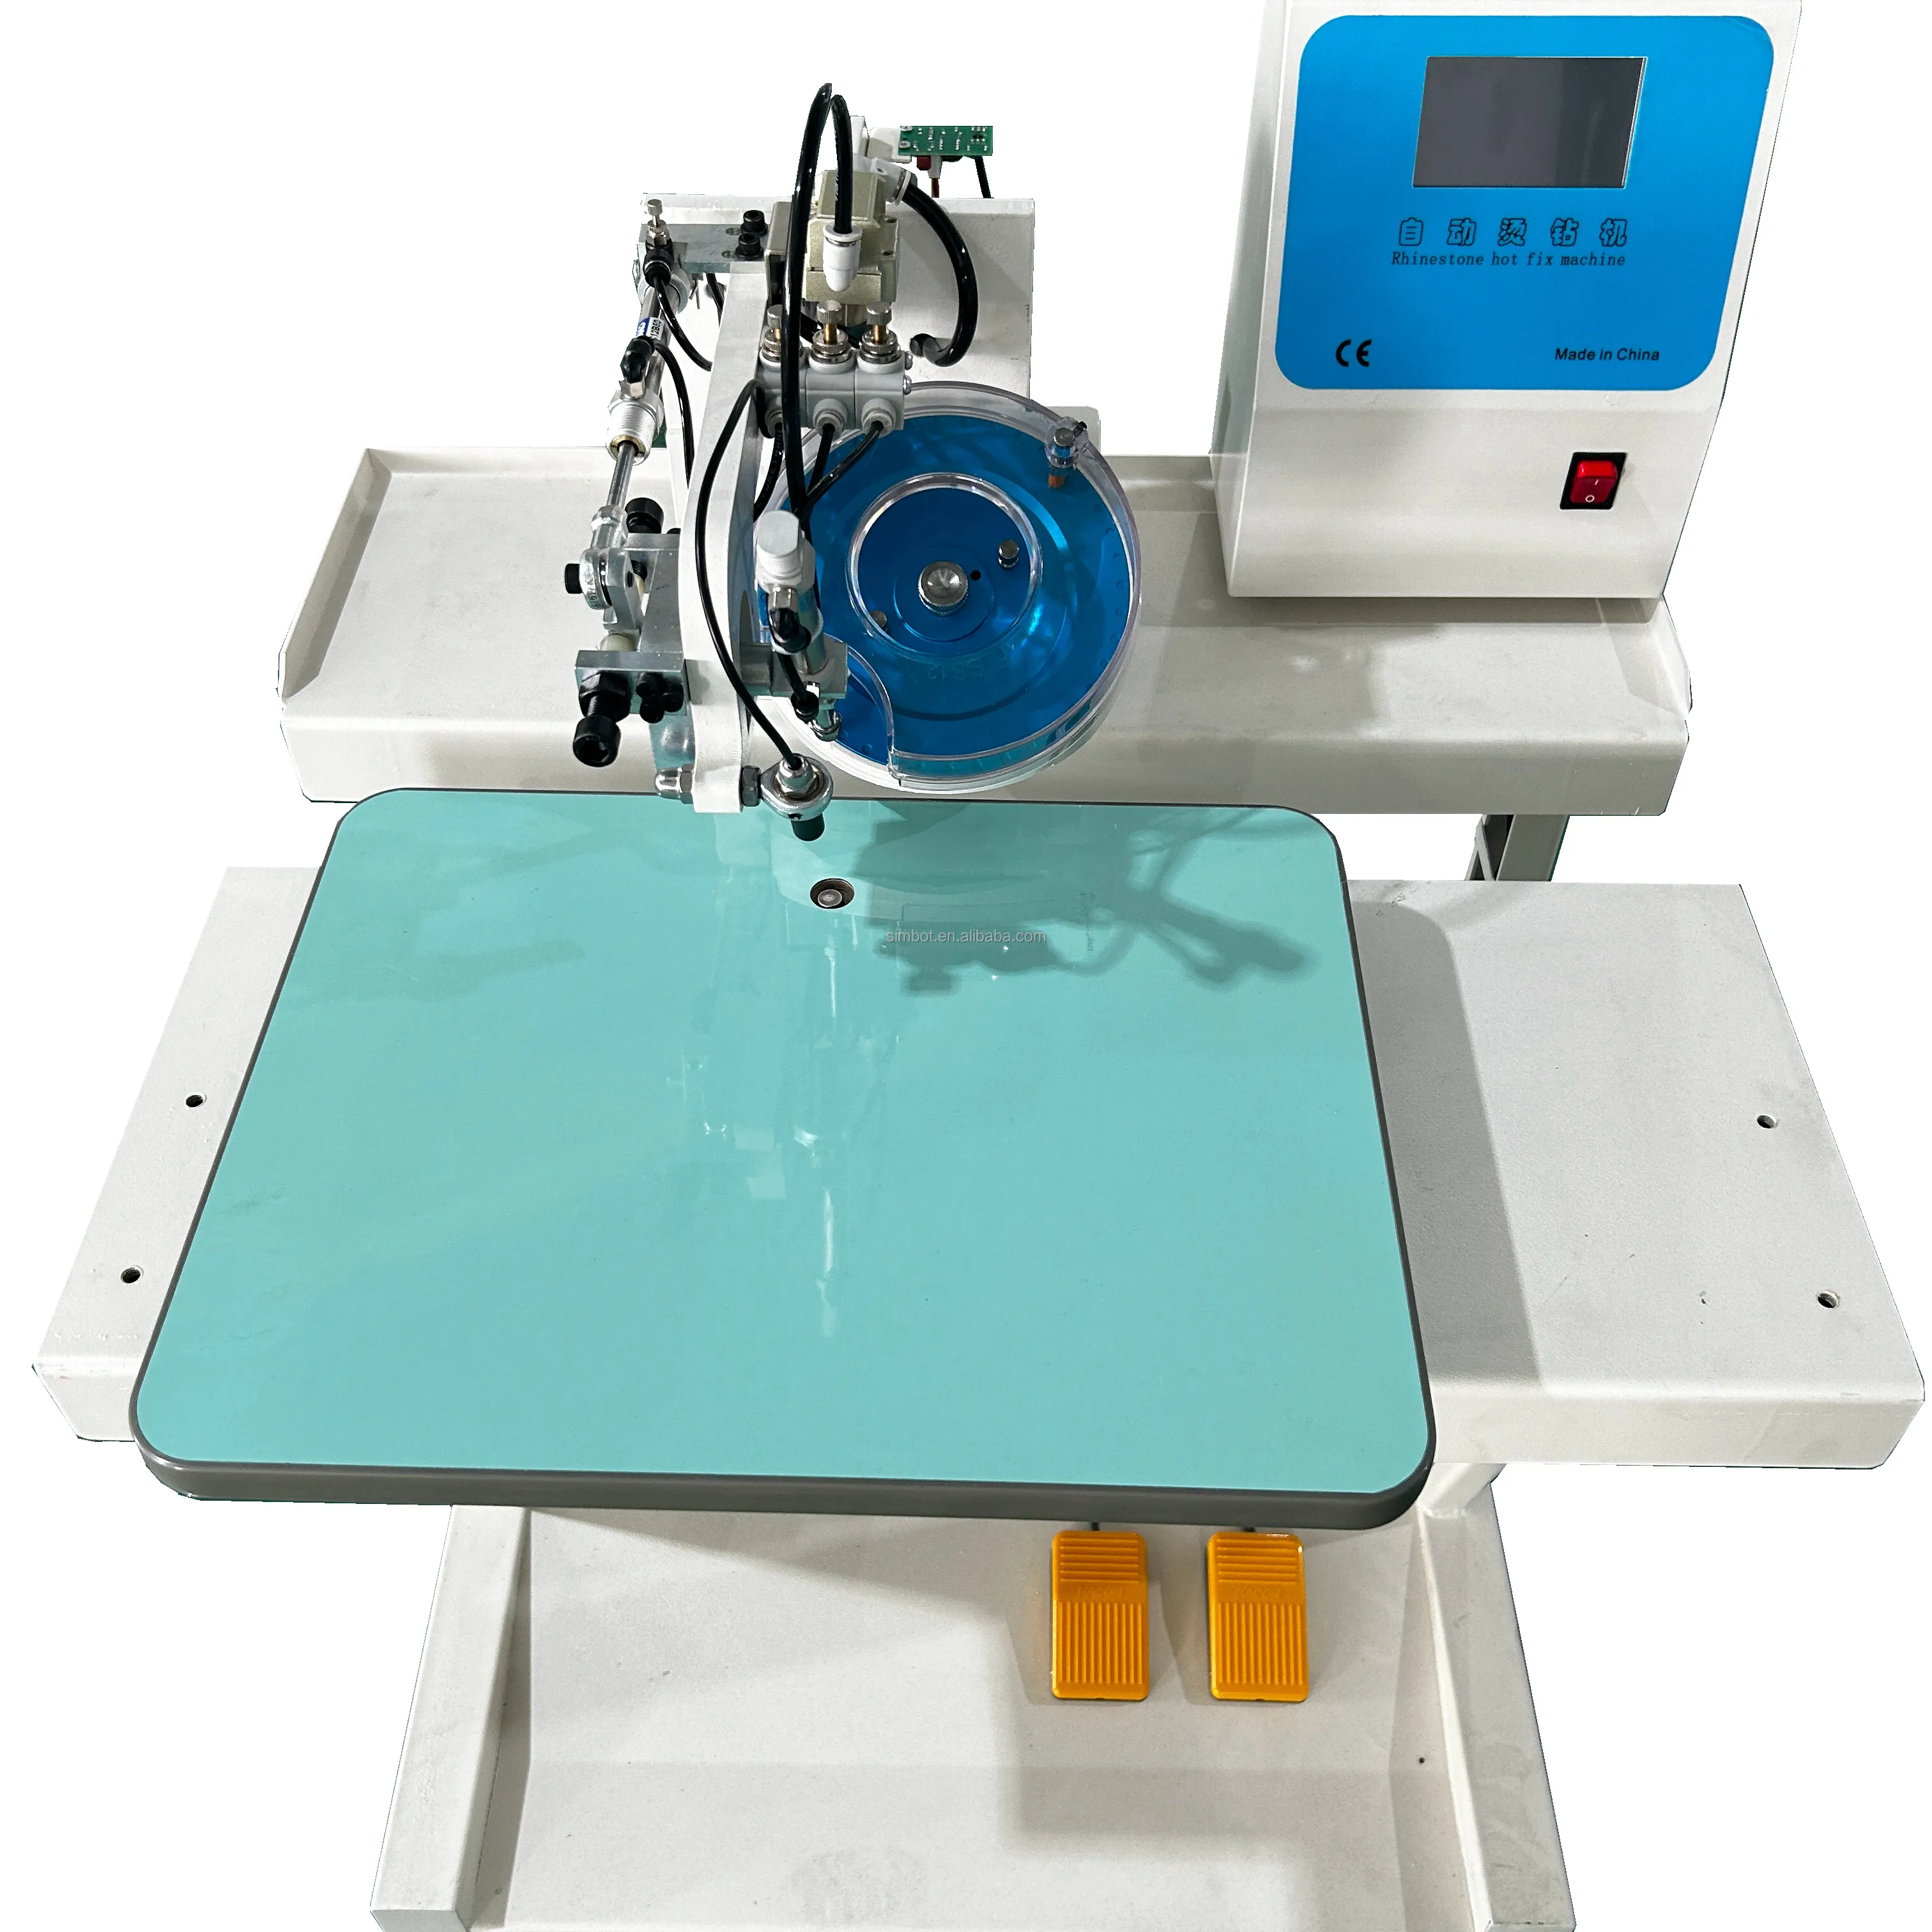 Mesin berlian imitasi Hotfix otomatis untuk pabrik pakaian grosir alat berlian imitasi Hotfix mesin berlian imitasi desain baru